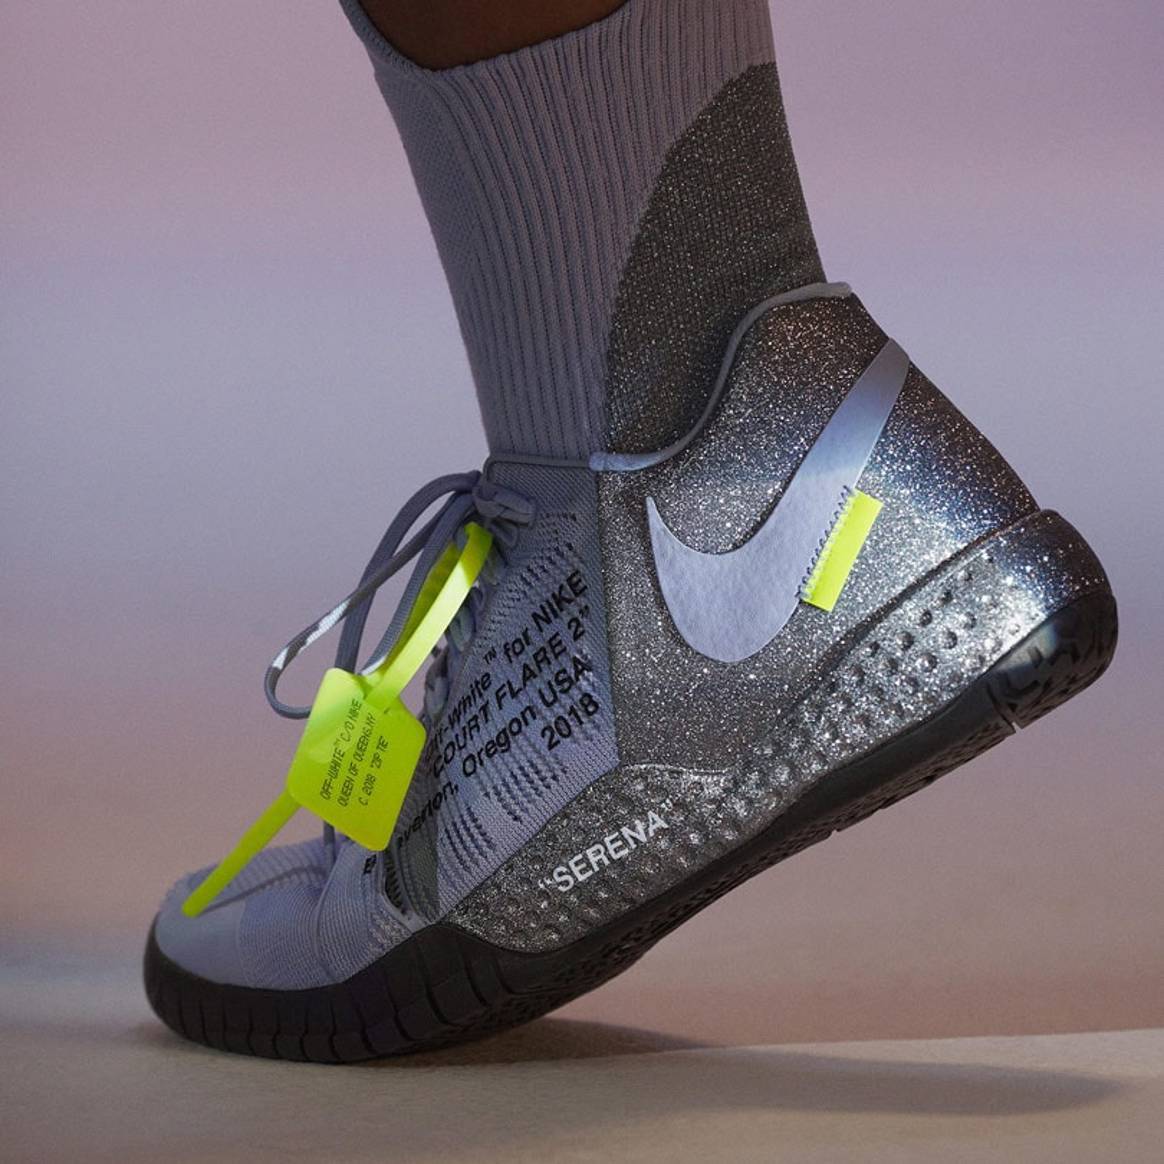 Virgil Abloh entwirft Nike-Kollektion für Serena Williams